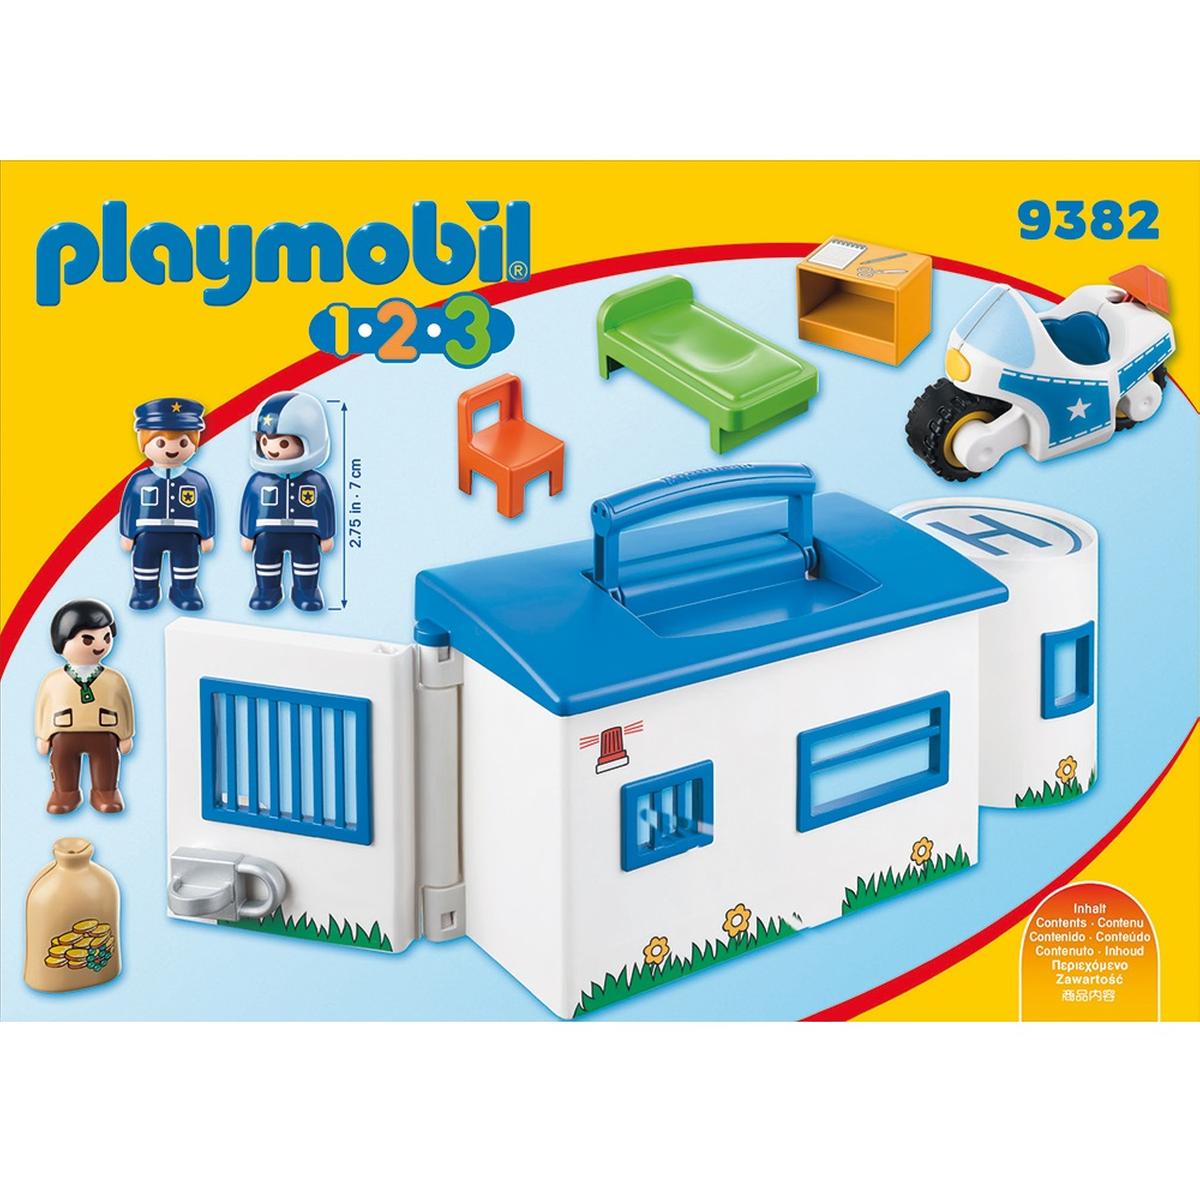 9382 Playmobil tomar a lo largo de la estación de policía Playmobil 1.2.3 conveniente para las edades de 1.5 y 